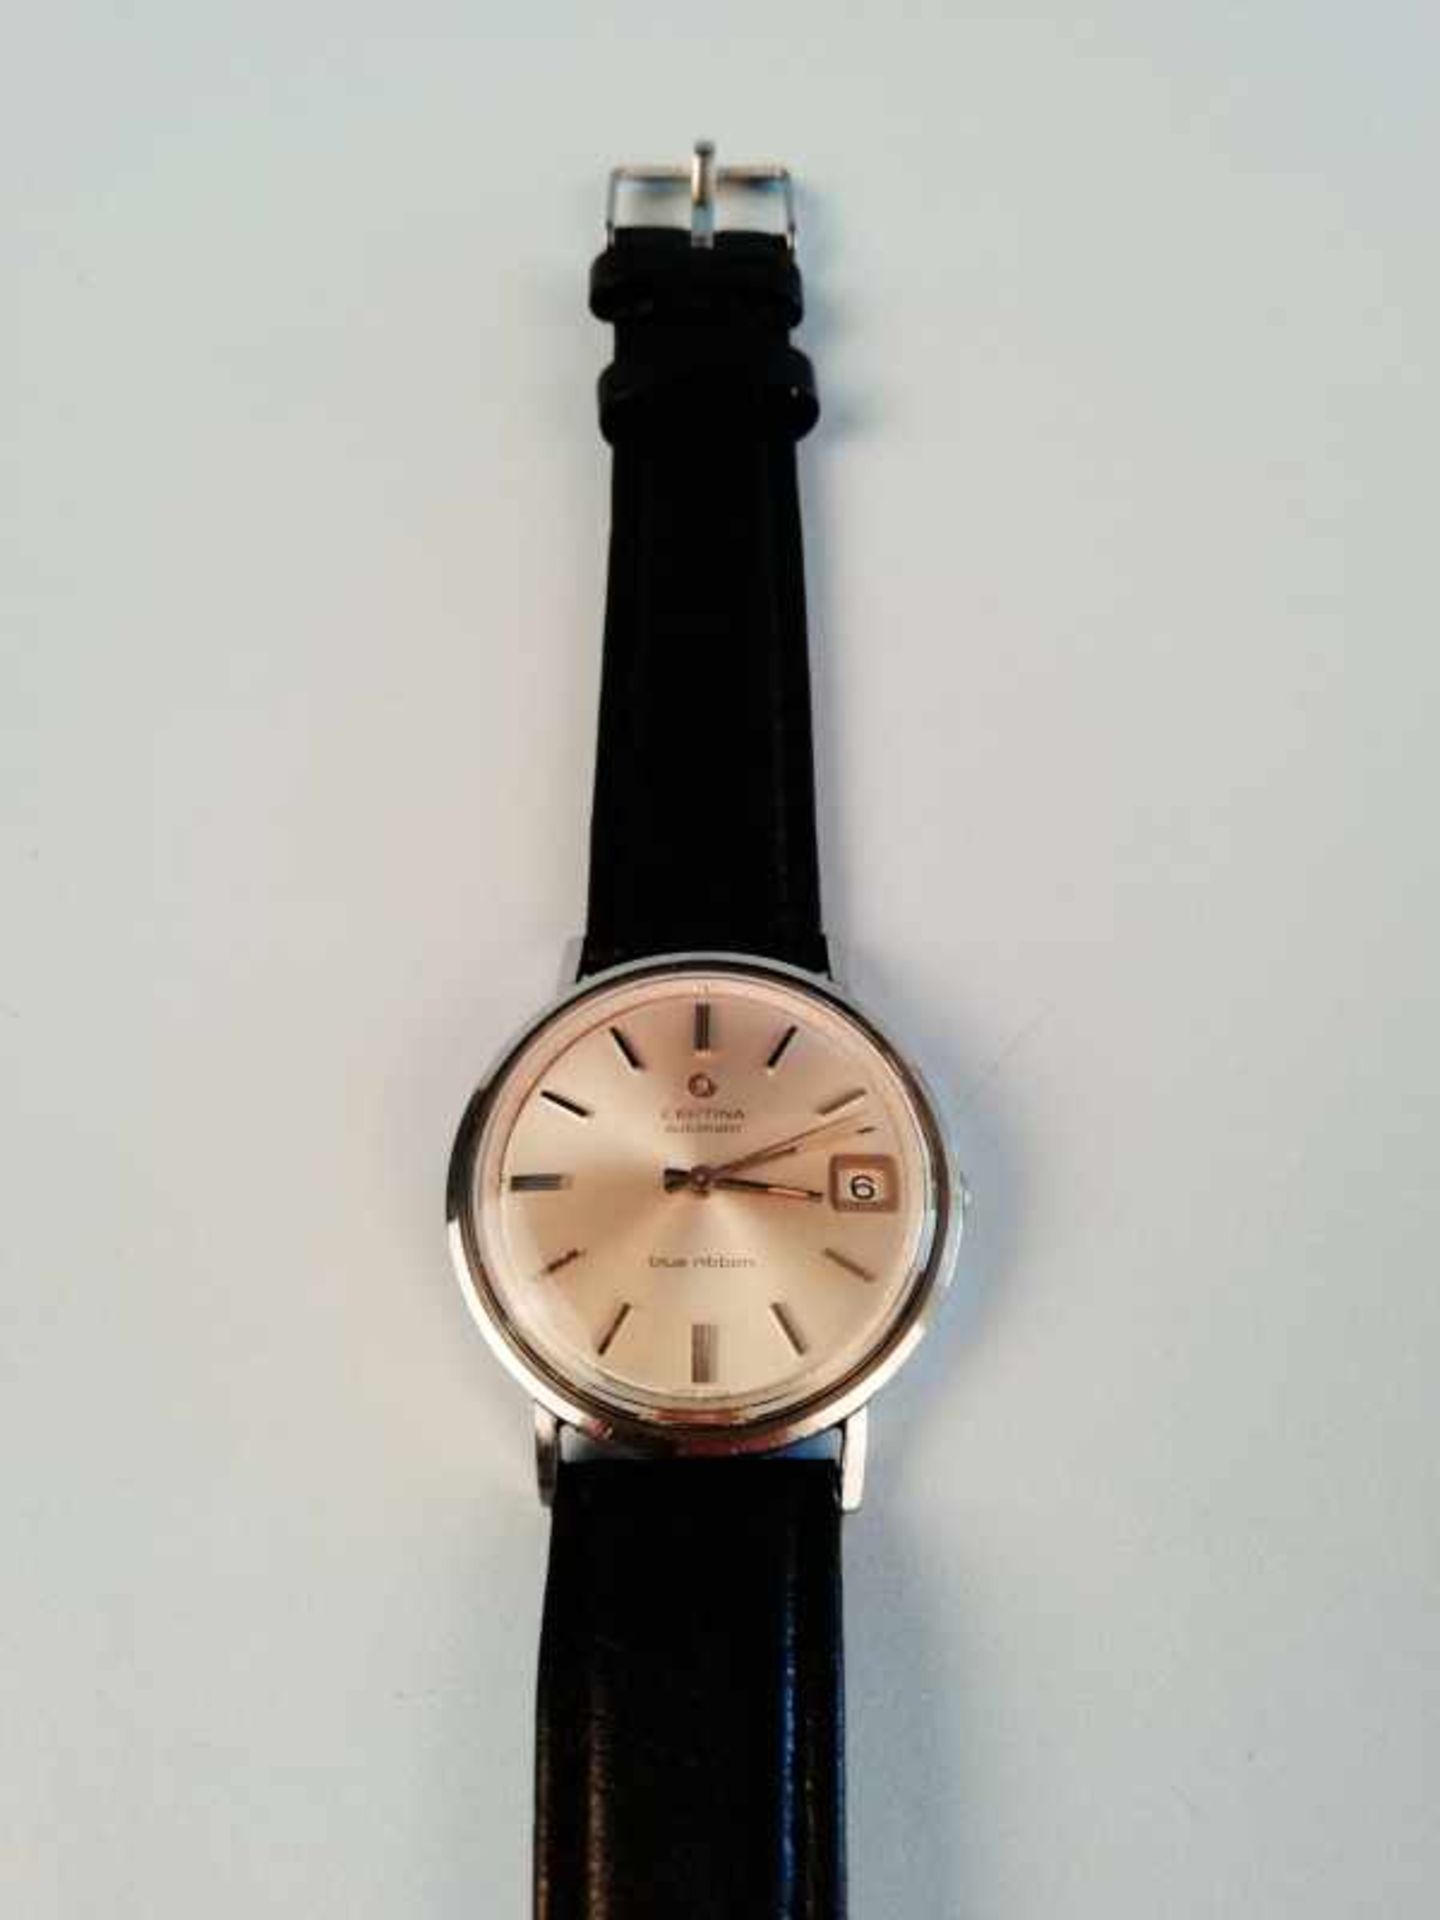 Armbanduhr "Certina"Metall, Vintage, Automatik, Datum, 38,9g, Werkservice wird empfohlen, keine